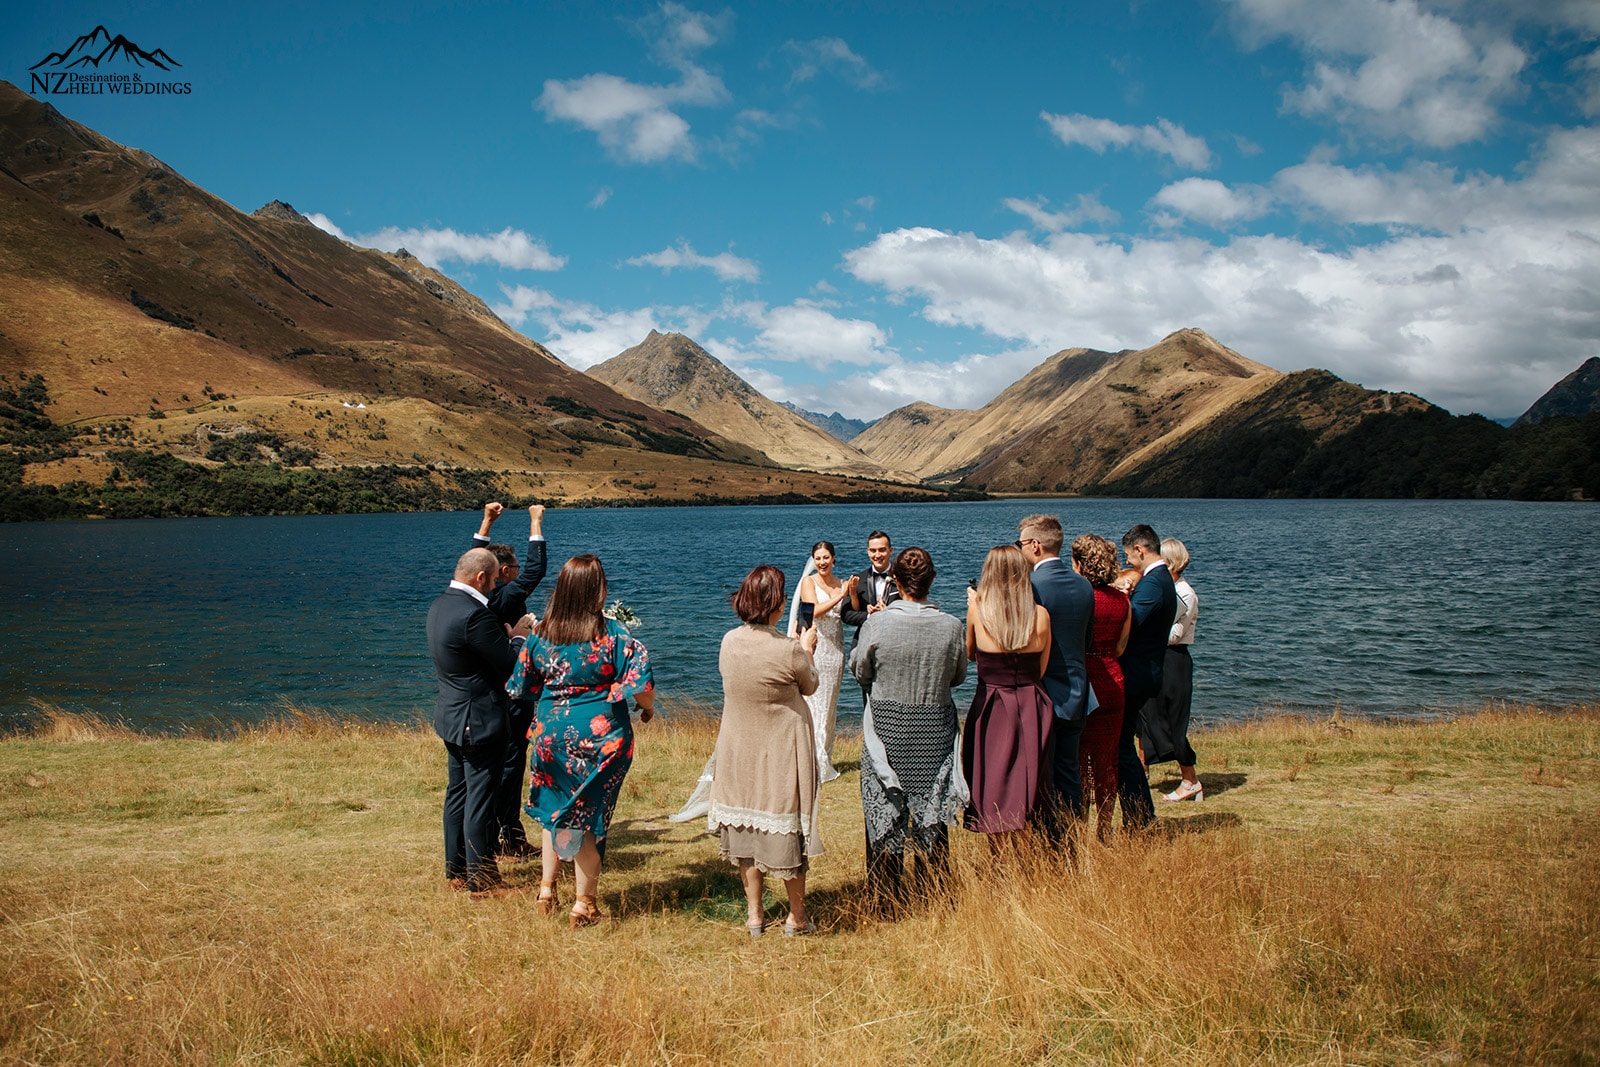 Moke Lake Wedding in Queenstown New Zealand